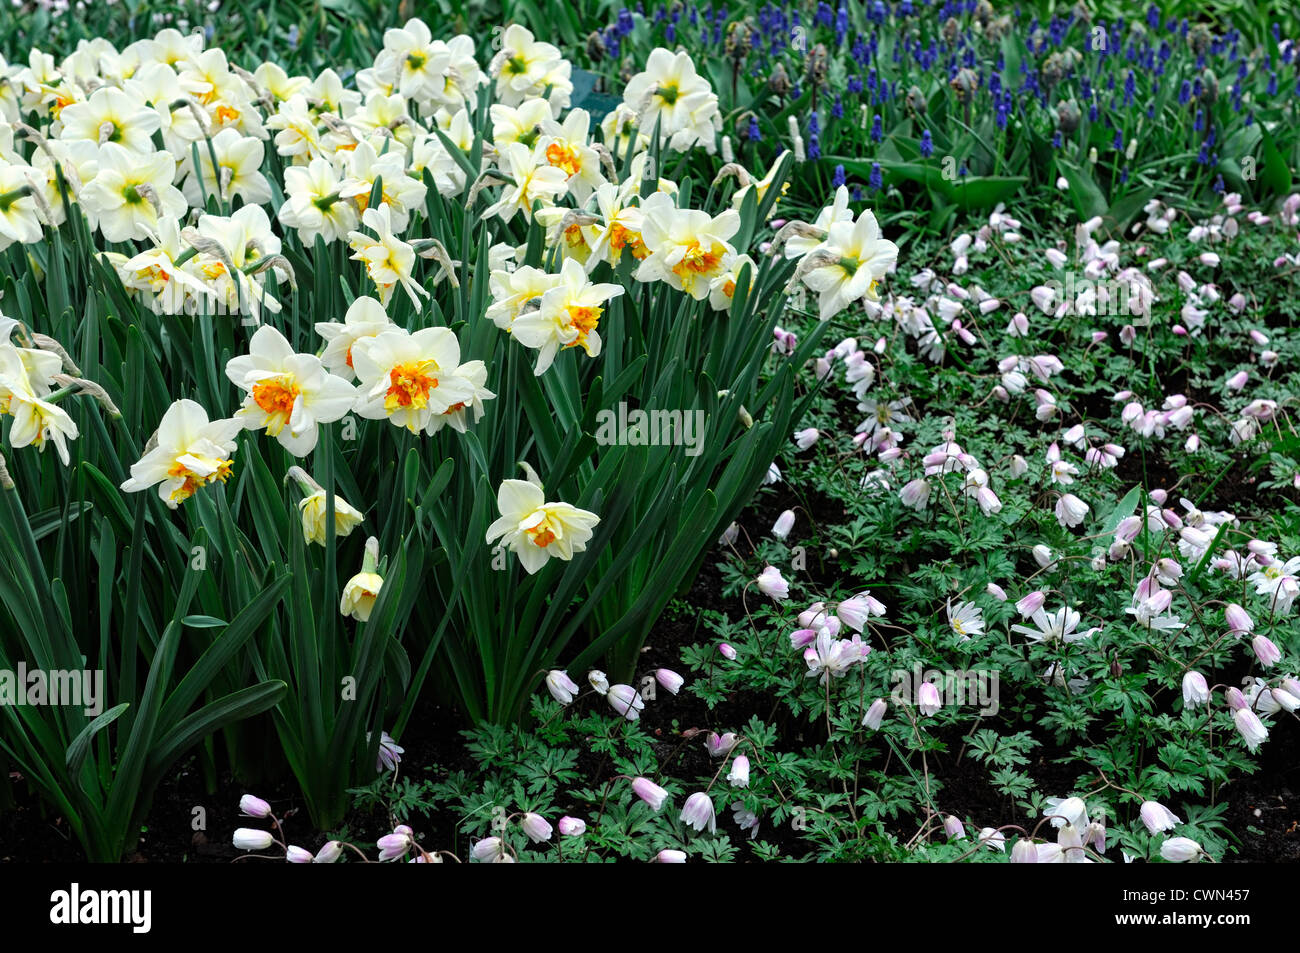 Narcissus flowerdrift anemone blanda yellow white mix mixed planting ...